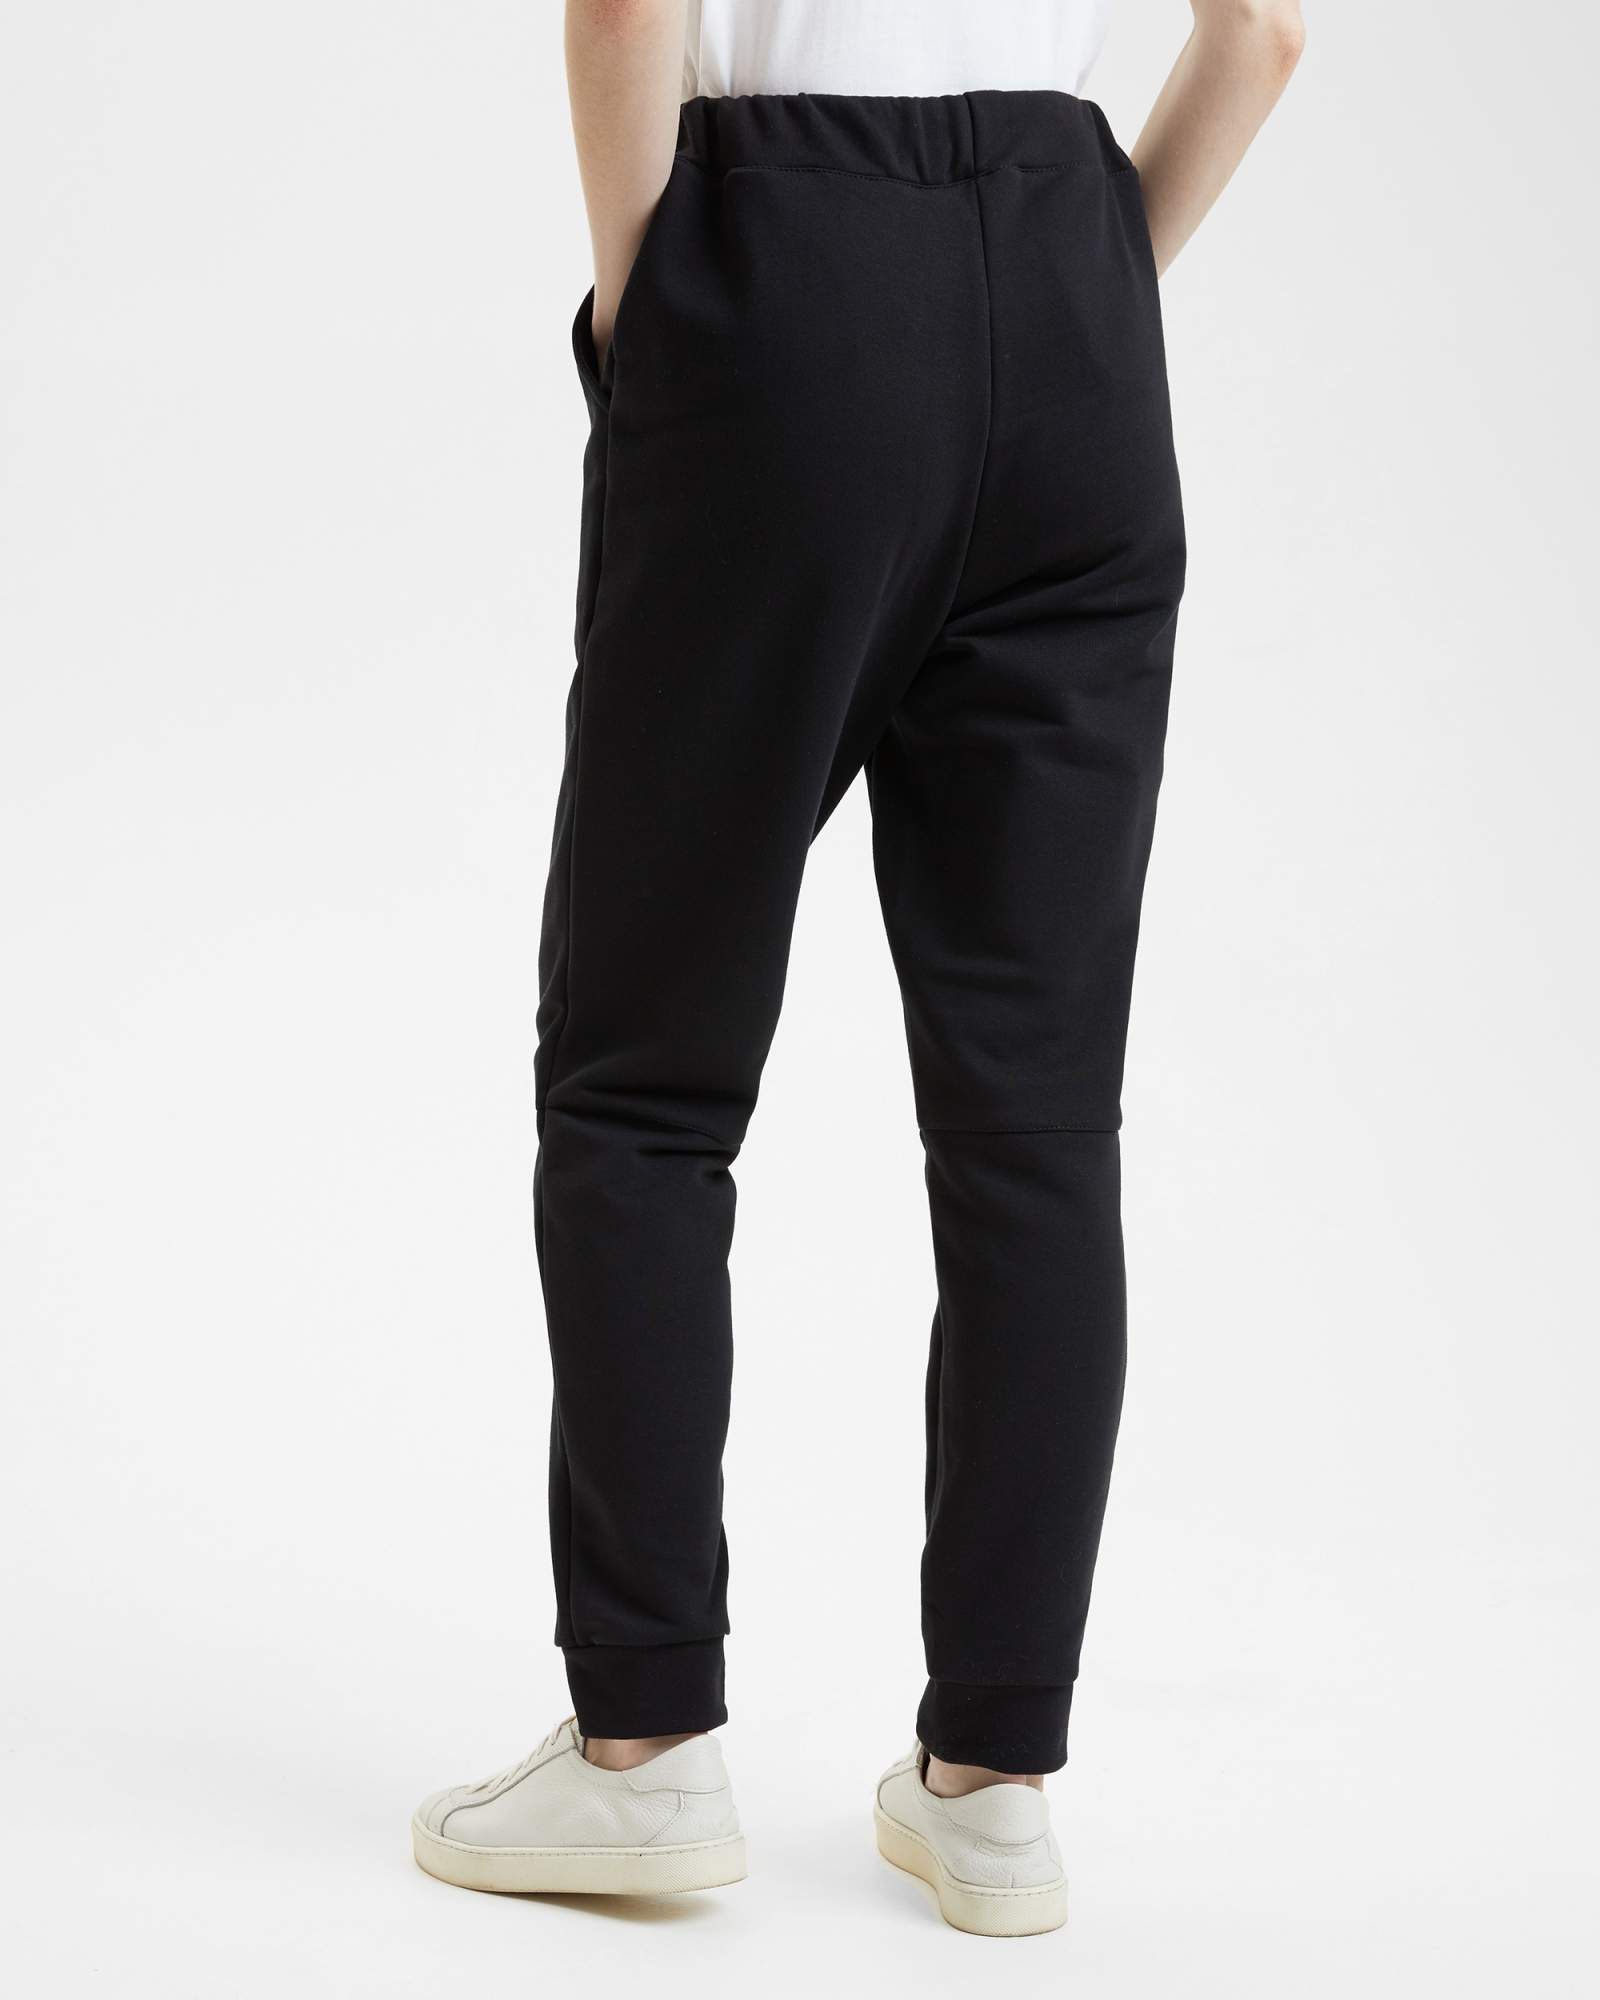 Спортивные брюки женские BARMARISKA с шевроном черные 36-38 RU